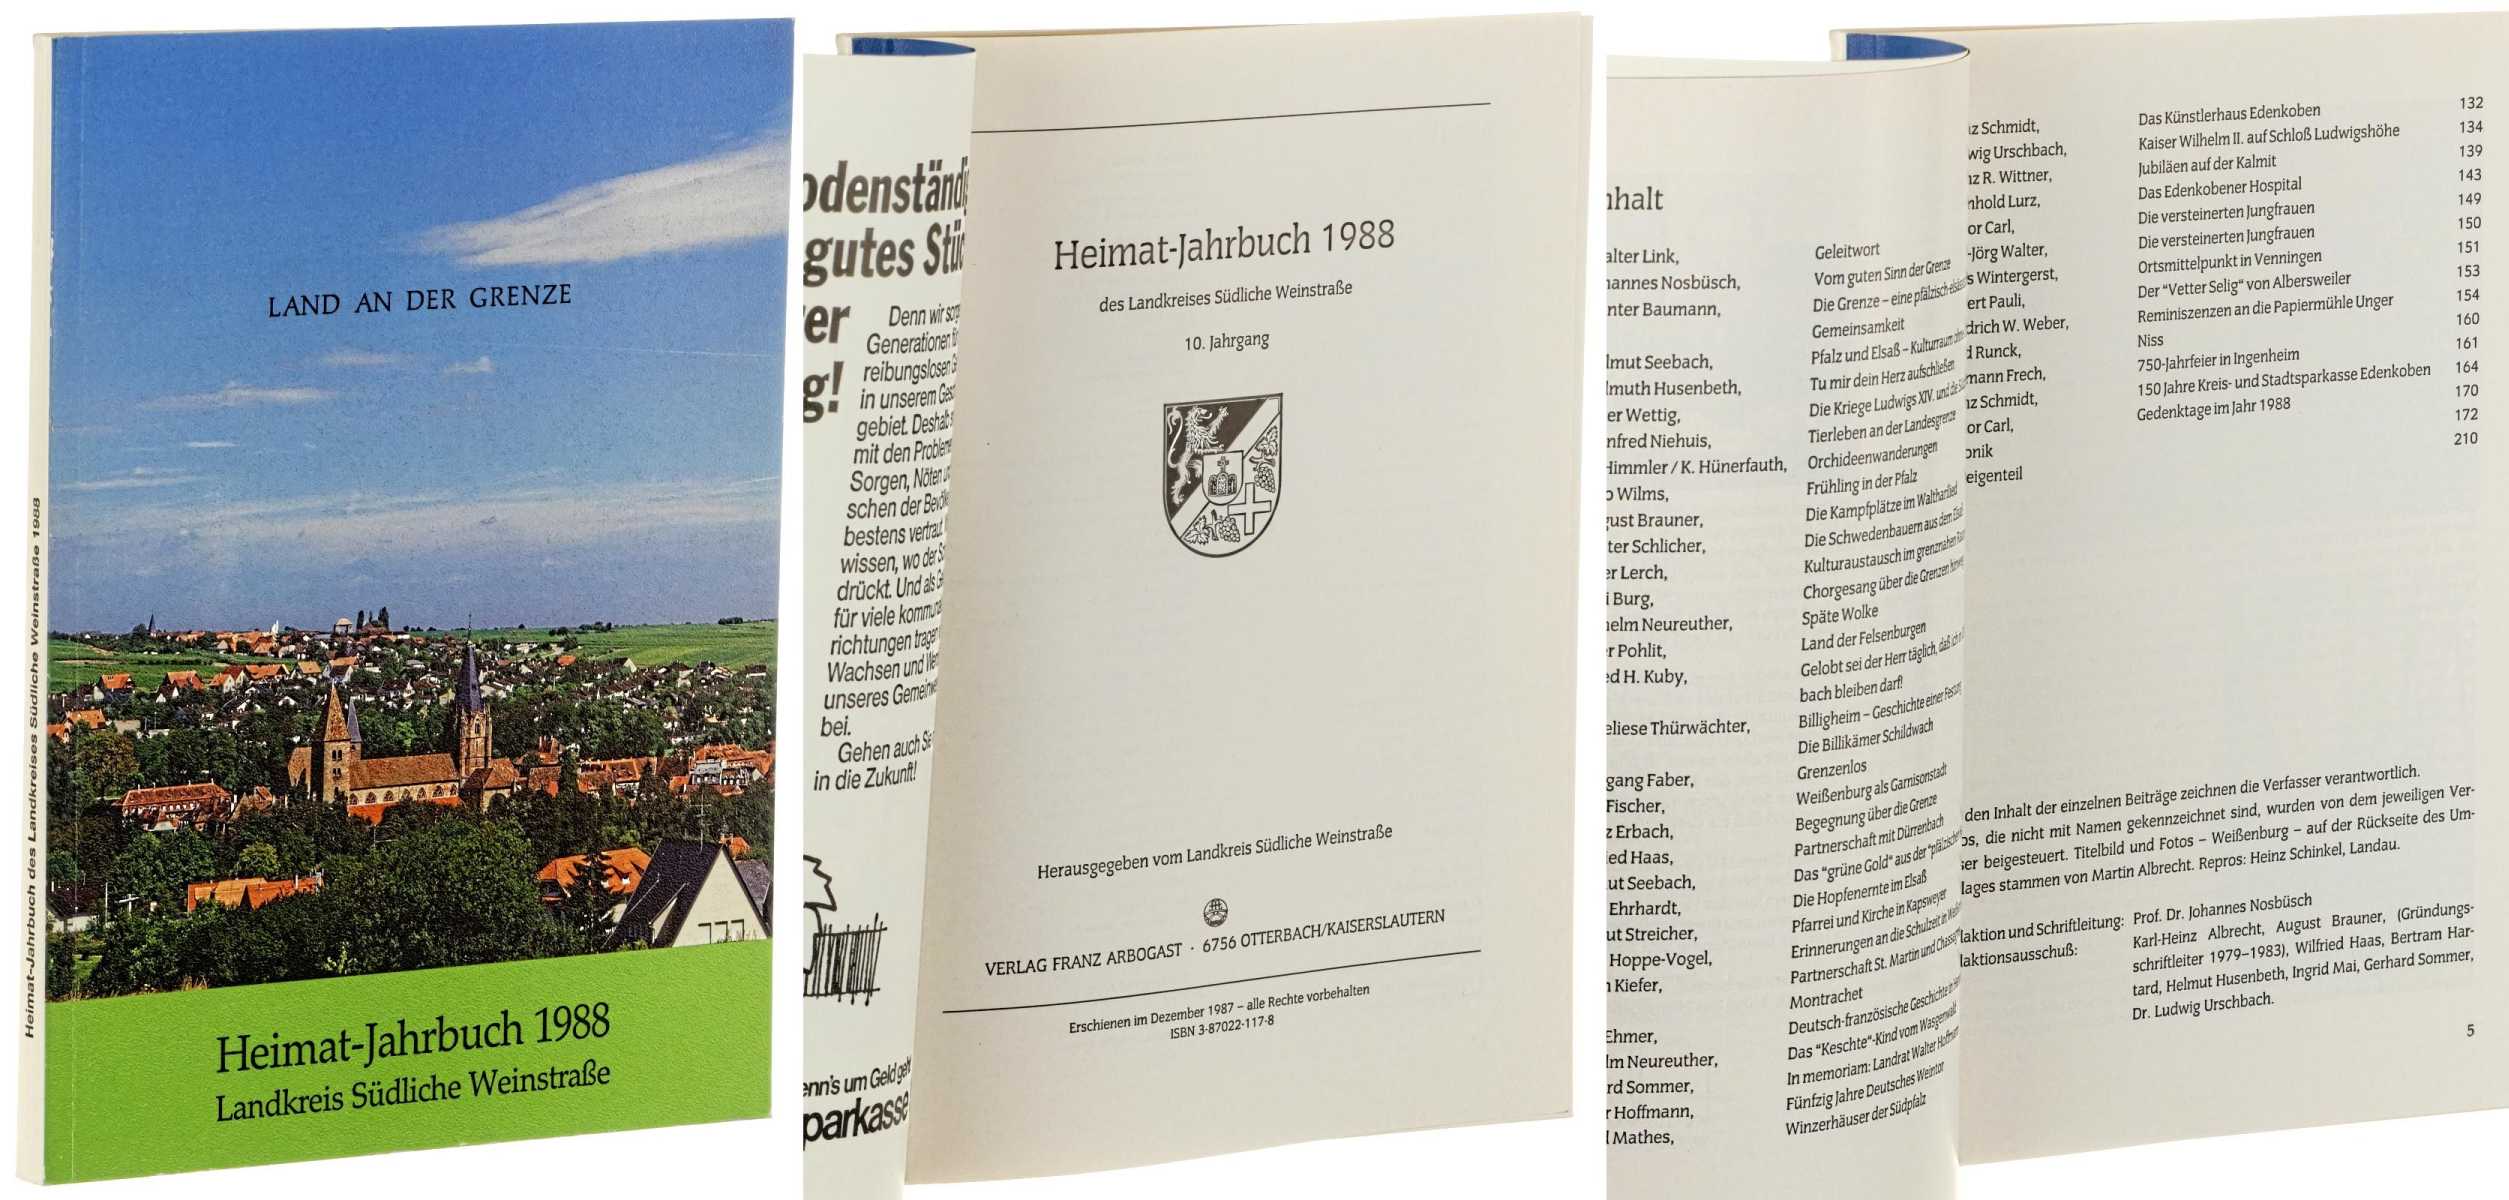   Heimat-Jahrbuch 1988 des Landkreises Südliche Weinstraße. [Land an der Grenze]. 